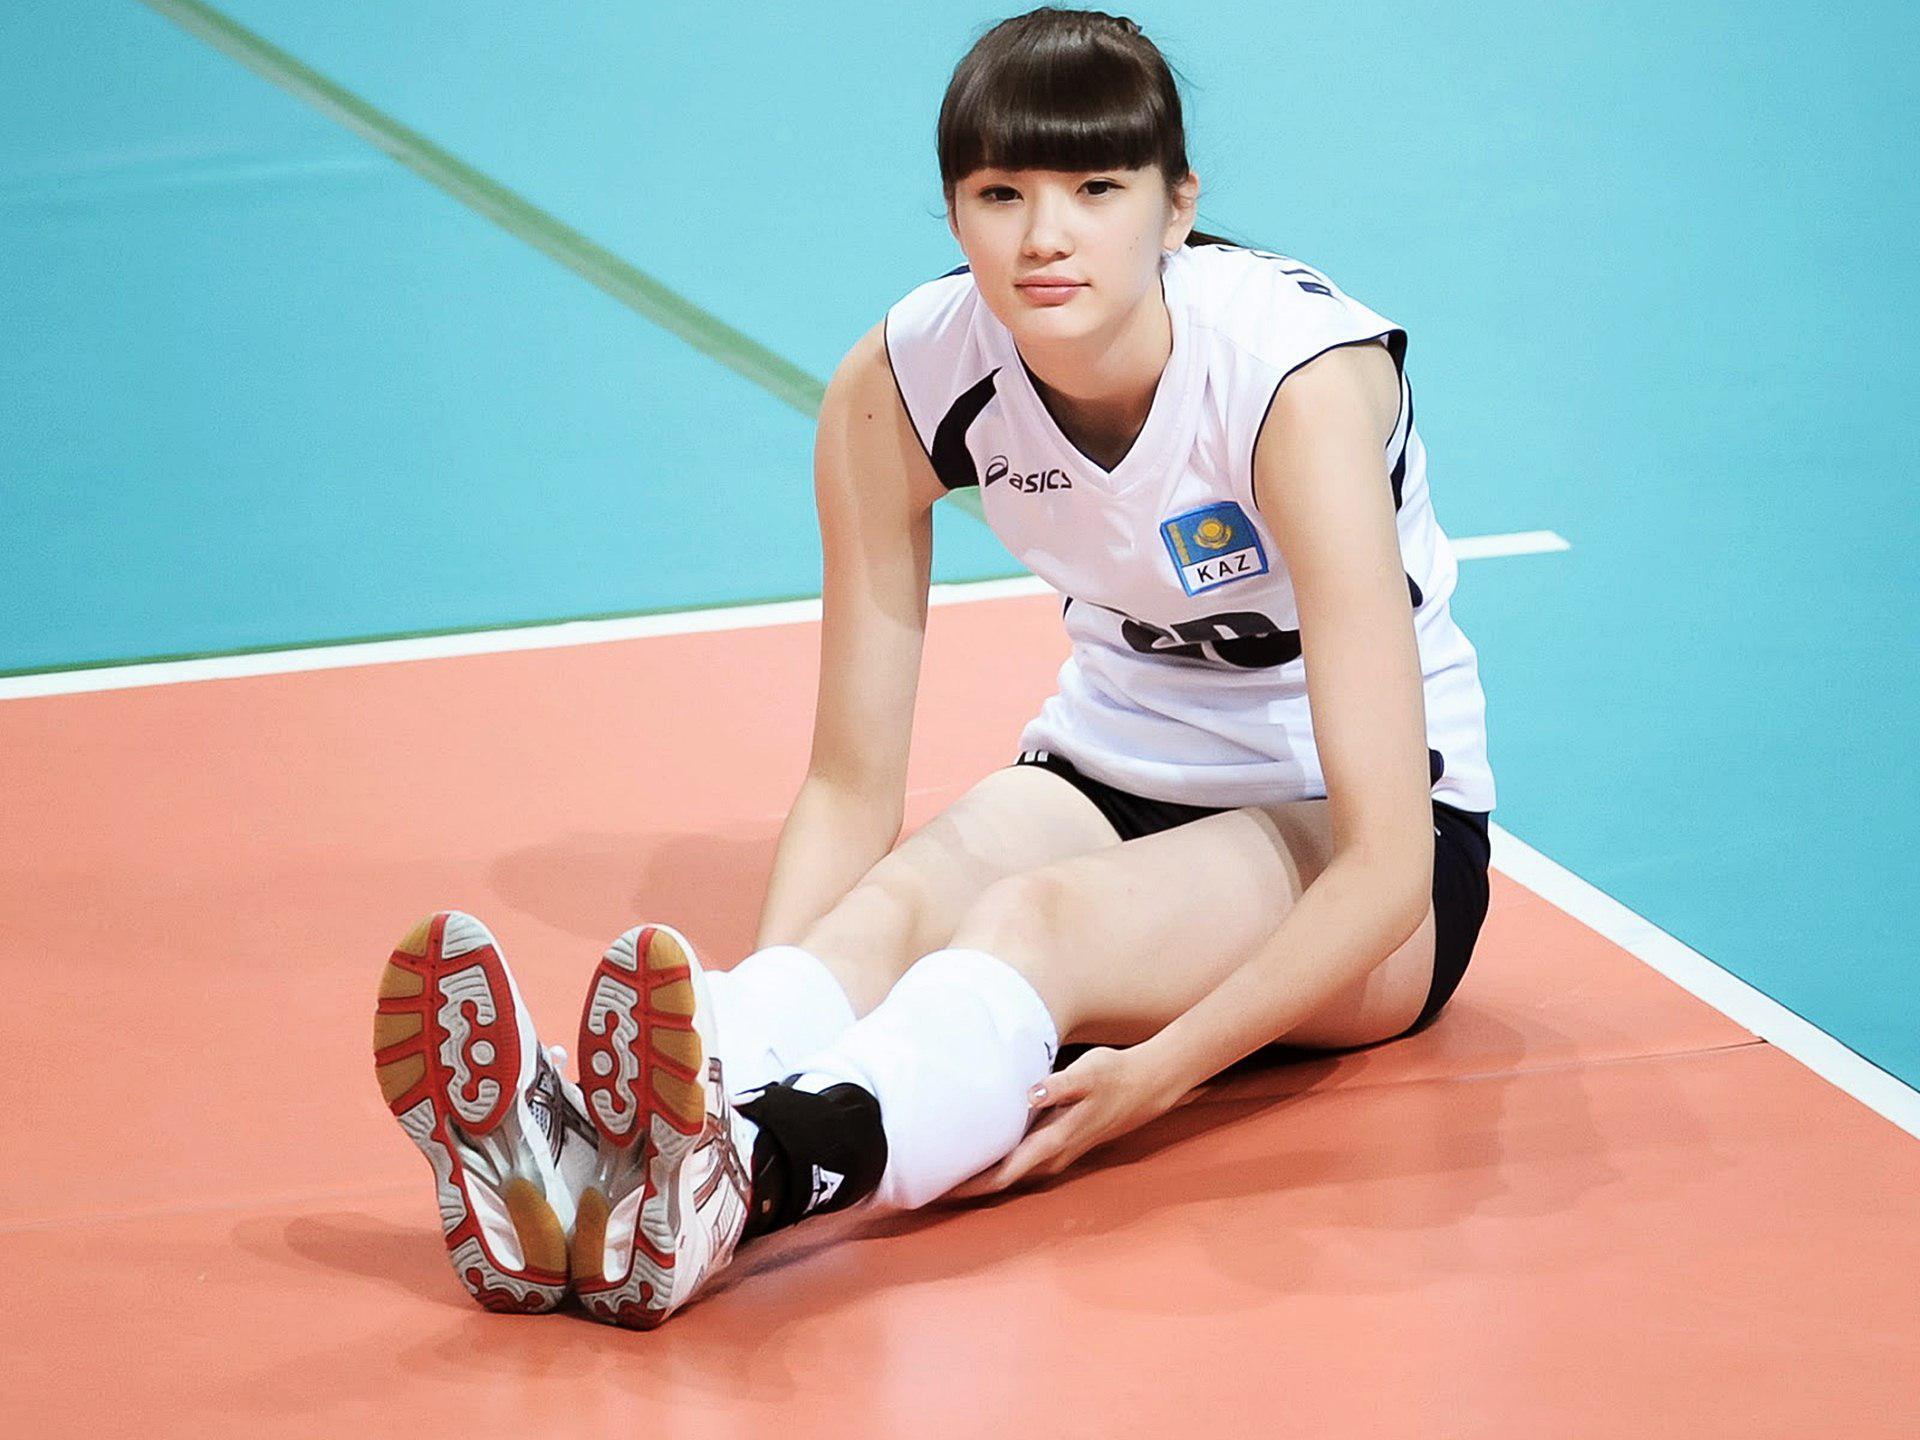 Sabina Altynbekova